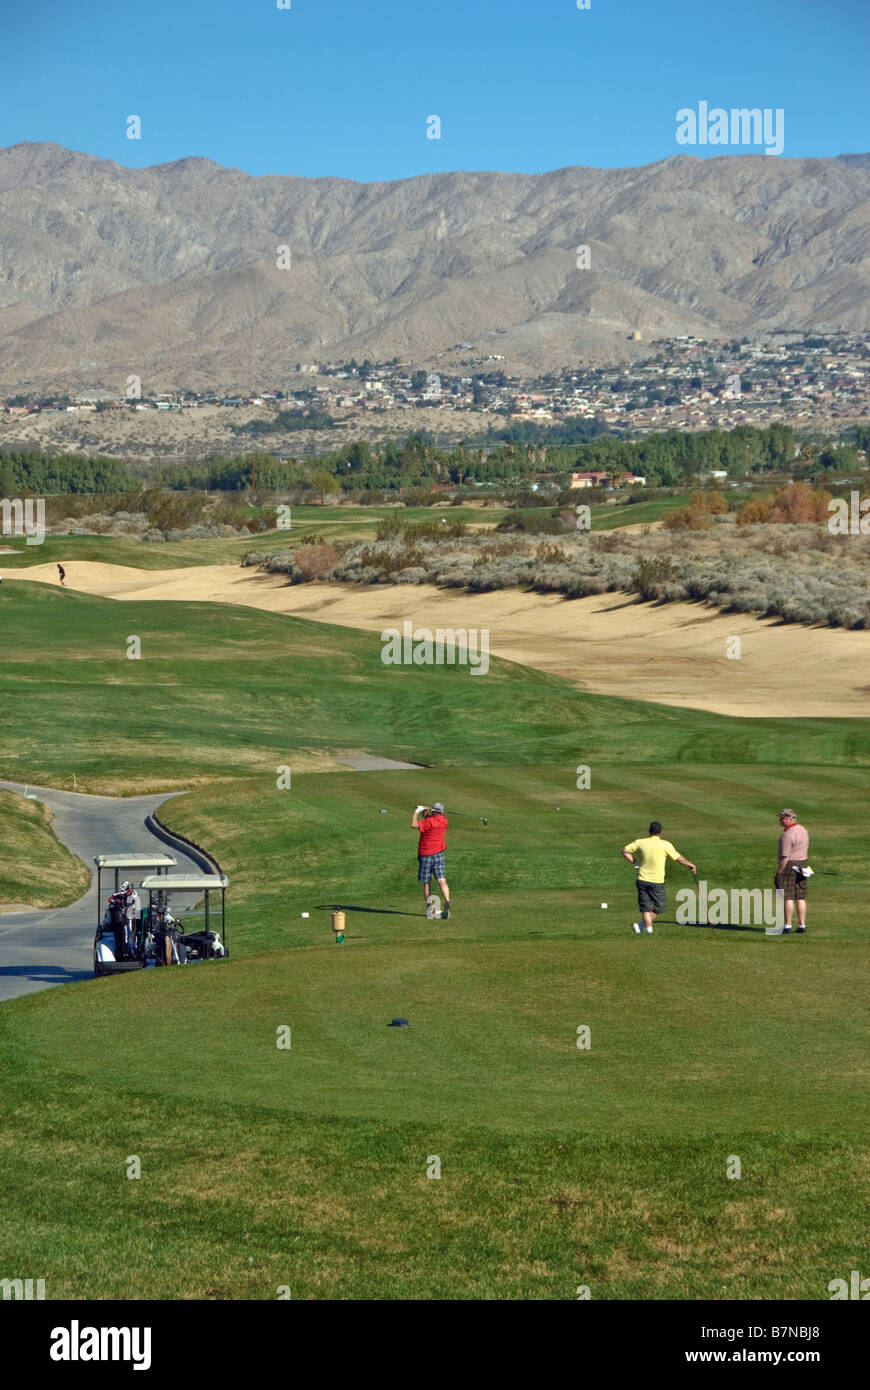 Wüste Dünen, uns Golf Course, Architekt, Robert Trent Jones, Jr. Coachella Valley, CA, Desert Hot Springs, in der Nähe von Palm Springs Stockfoto